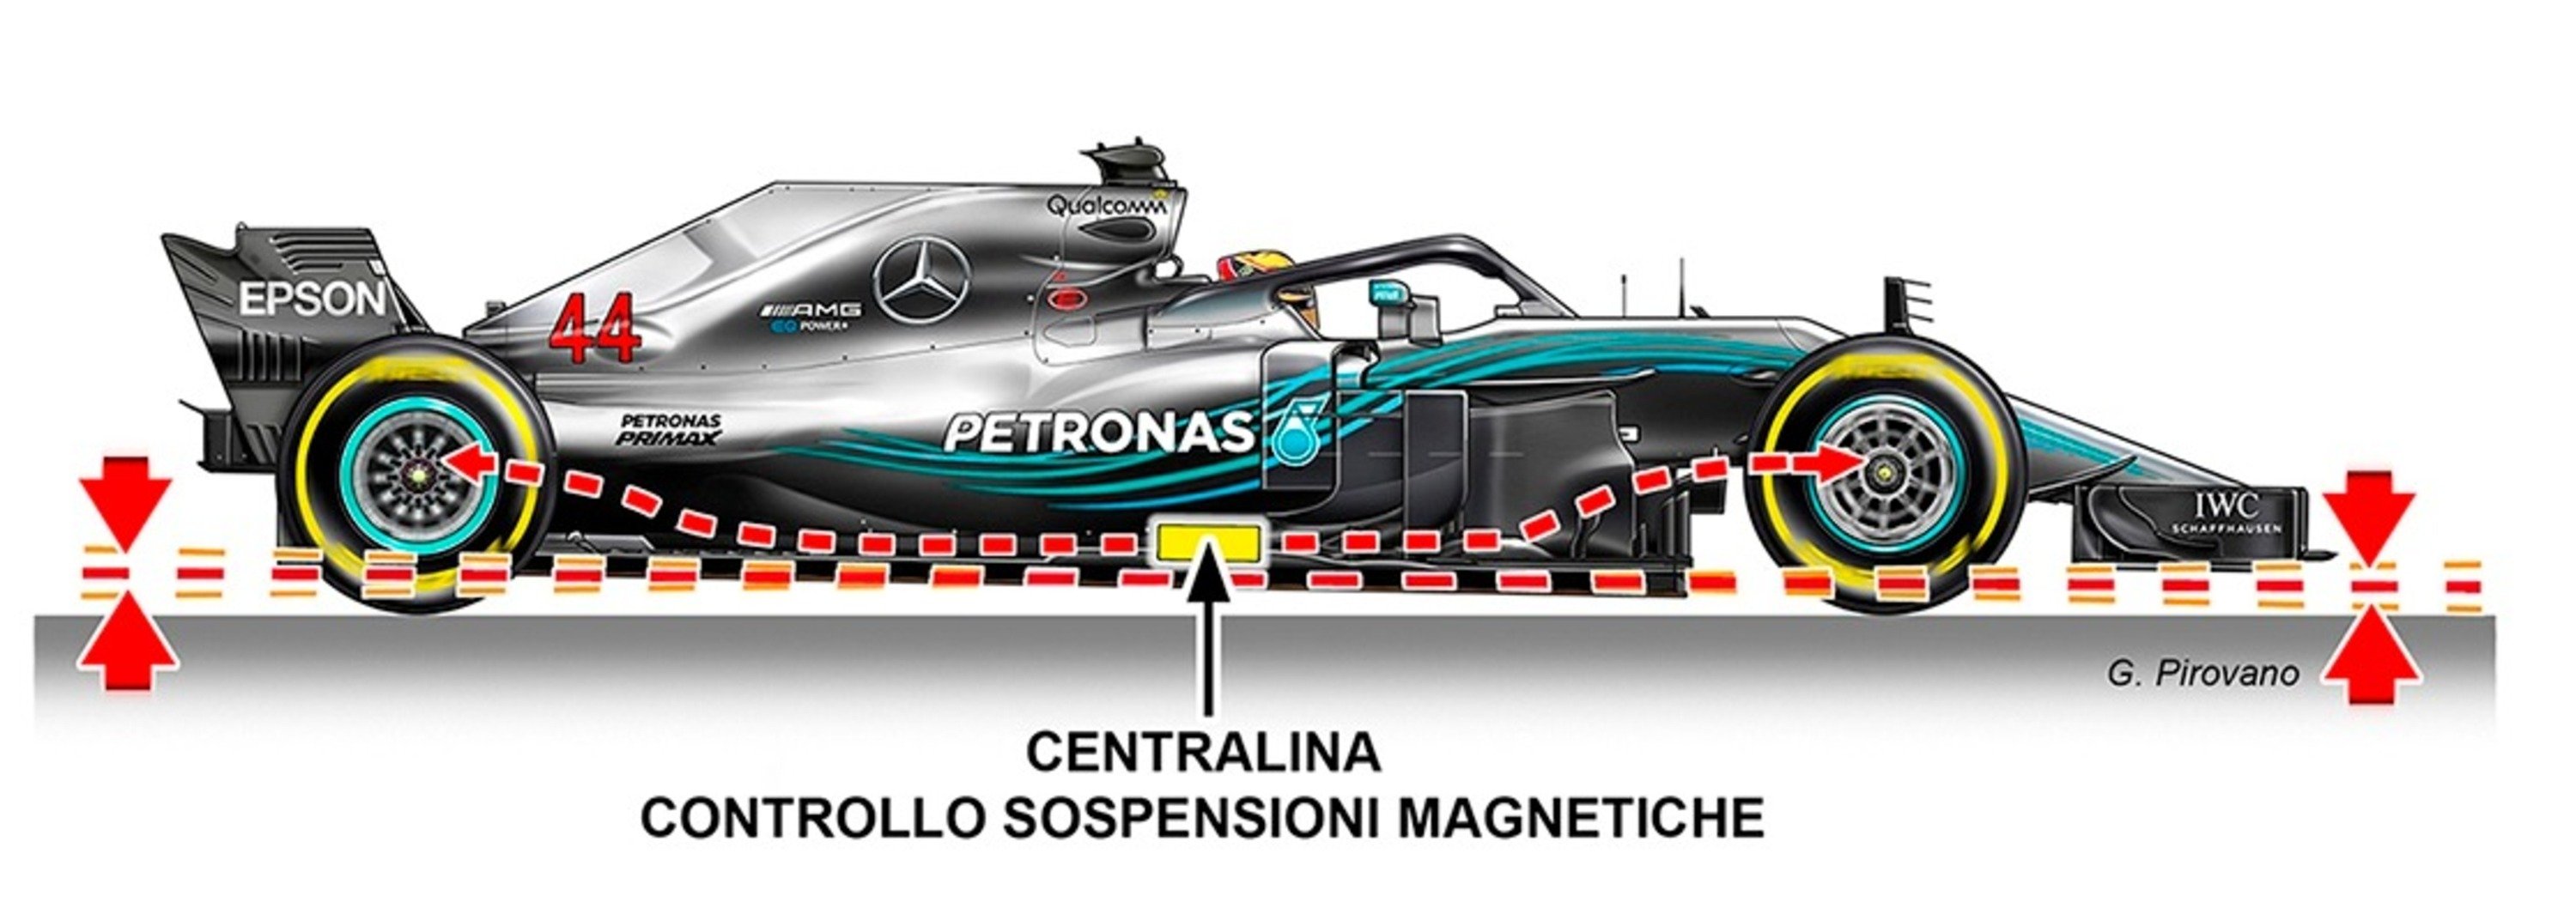 Mercedes F1 con sospensioni magnetiche?